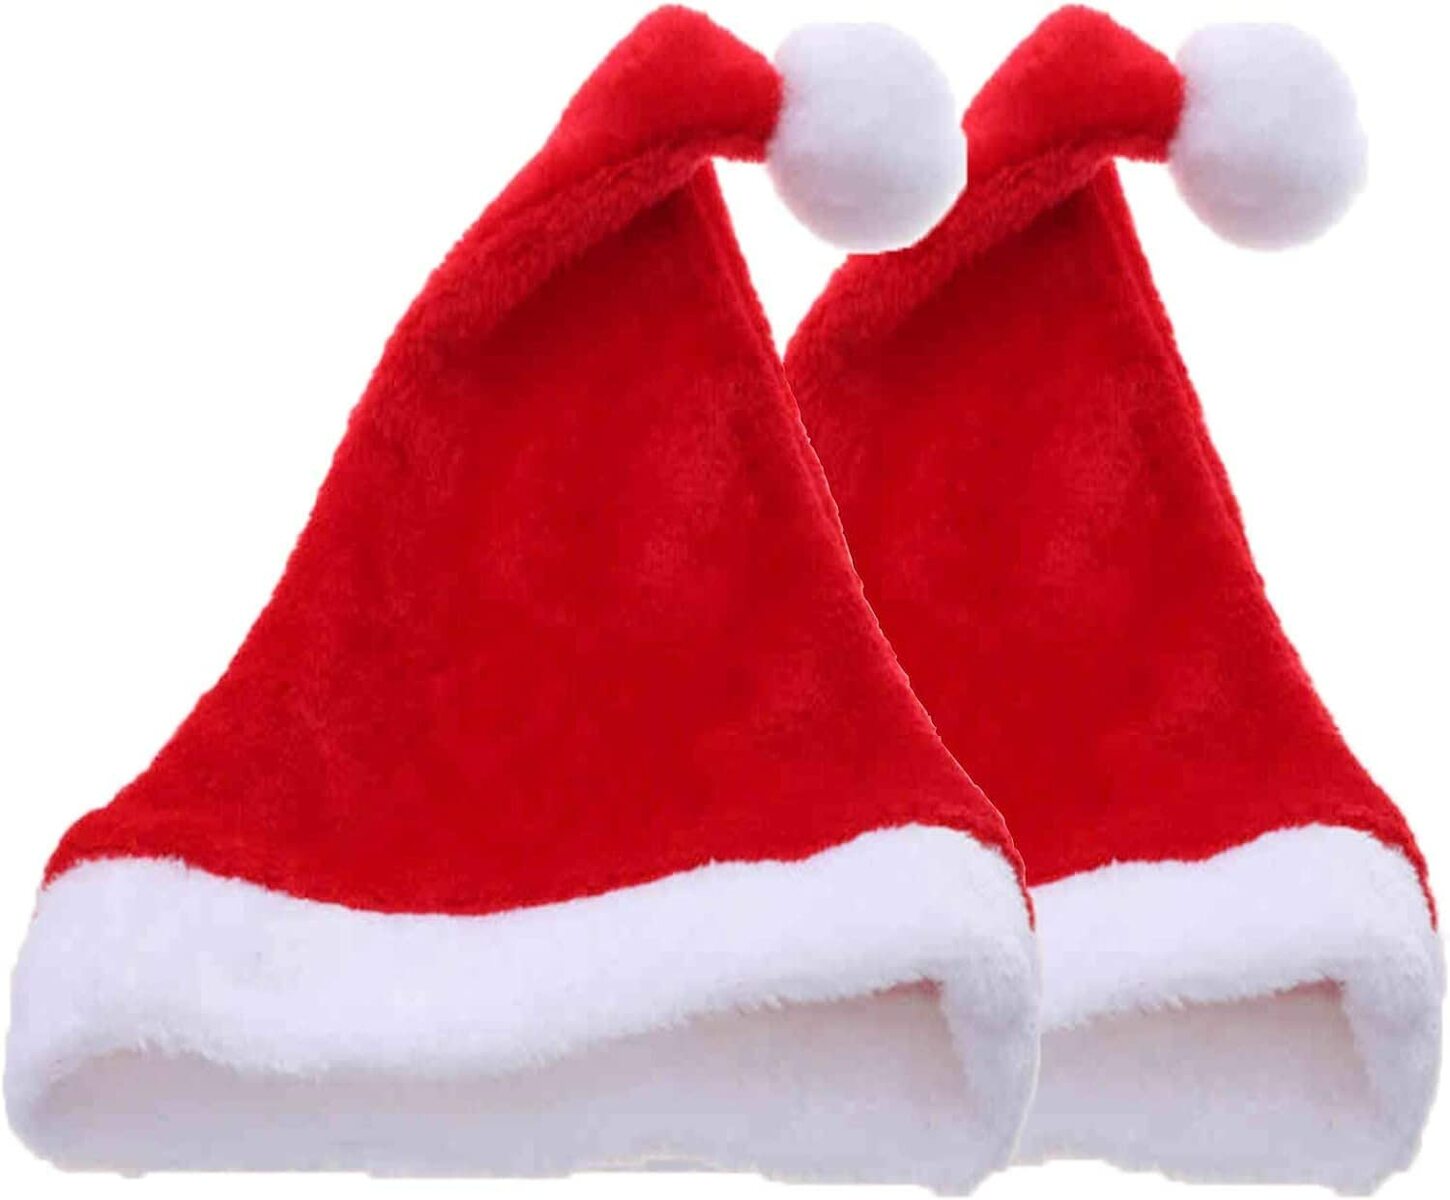 サンタクロース サンタ帽子 2個セット クリスマス 厳選の ニュートラルベルベットの快適なクリスマスハット 新年 ホリデーパーティー用品 クリスマスハット サンタハット 男女兼用 赤